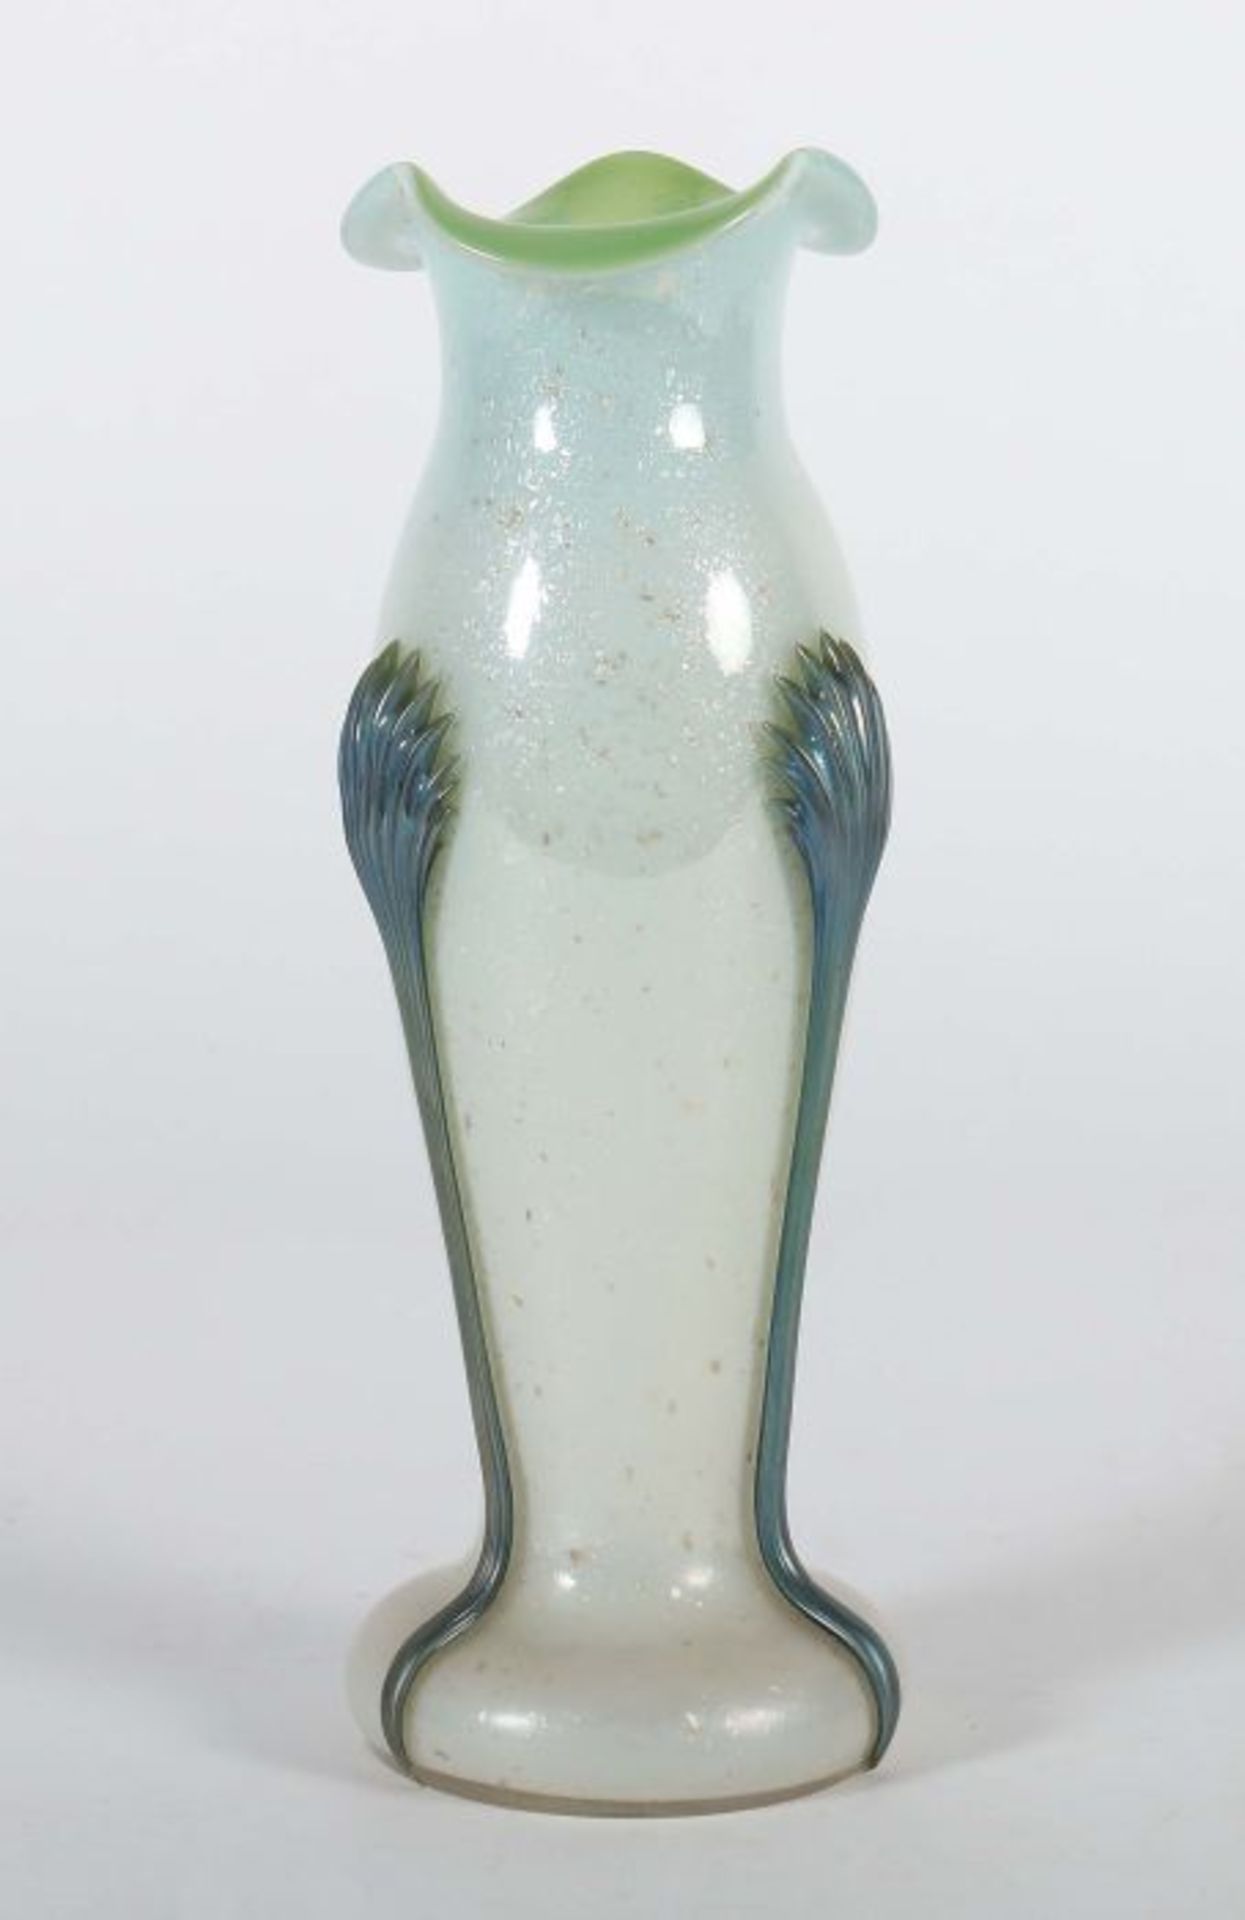 Vase mit MuscheldekorLötz Witwe, Klostermühle, um 1900/1910, farbloses Glas, mundgeblasen und frei - Bild 2 aus 3